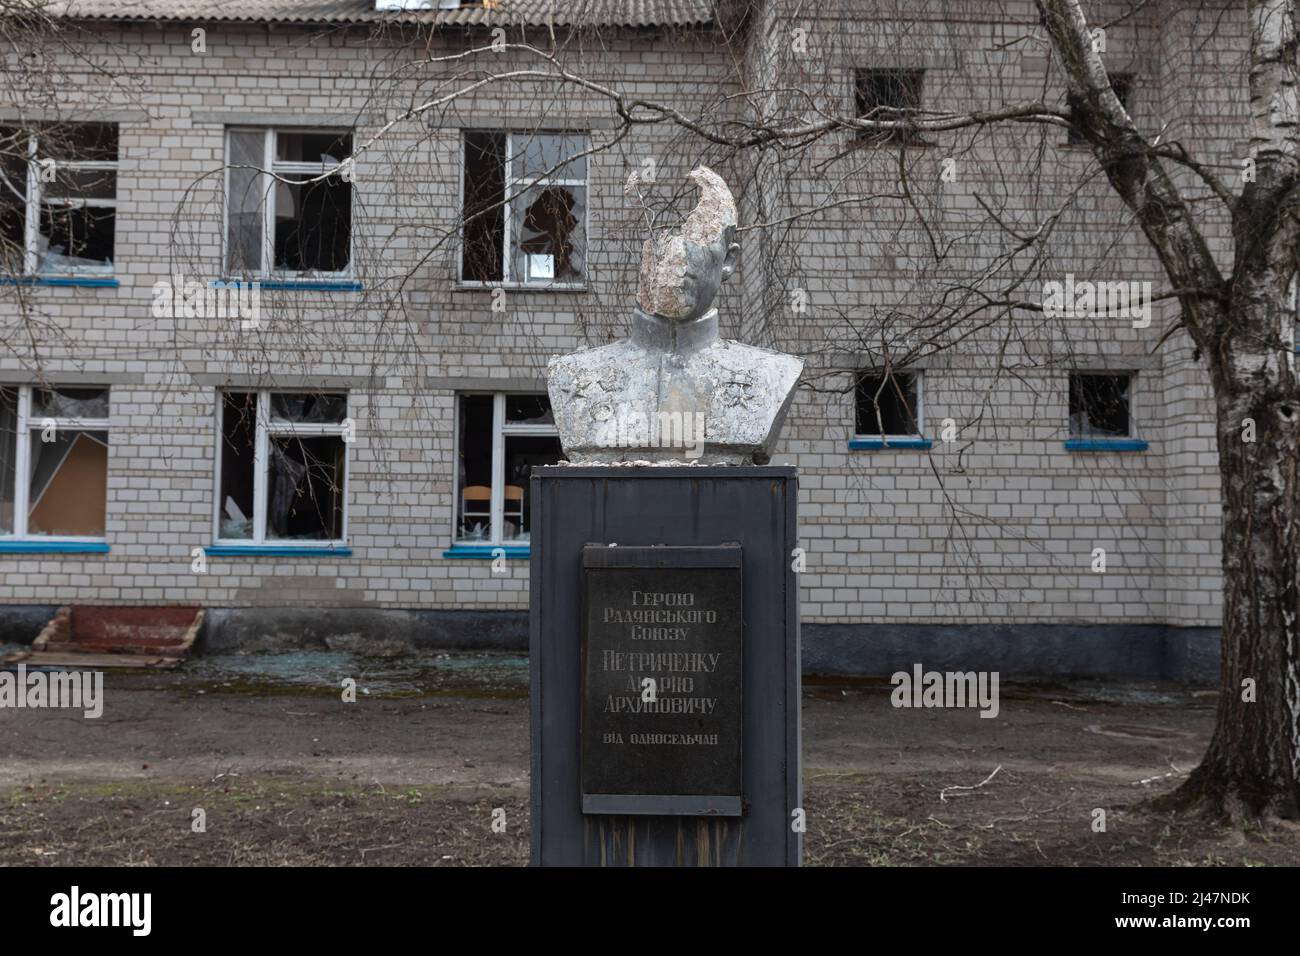 Monumento danneggiato all'eroe dell'Unione Sovietica Petrichenko Andrey Arkhivovich. Caos e devastazione per le strade di Andriivka a seguito dell'attacco degli invasori russi. Foto Stock